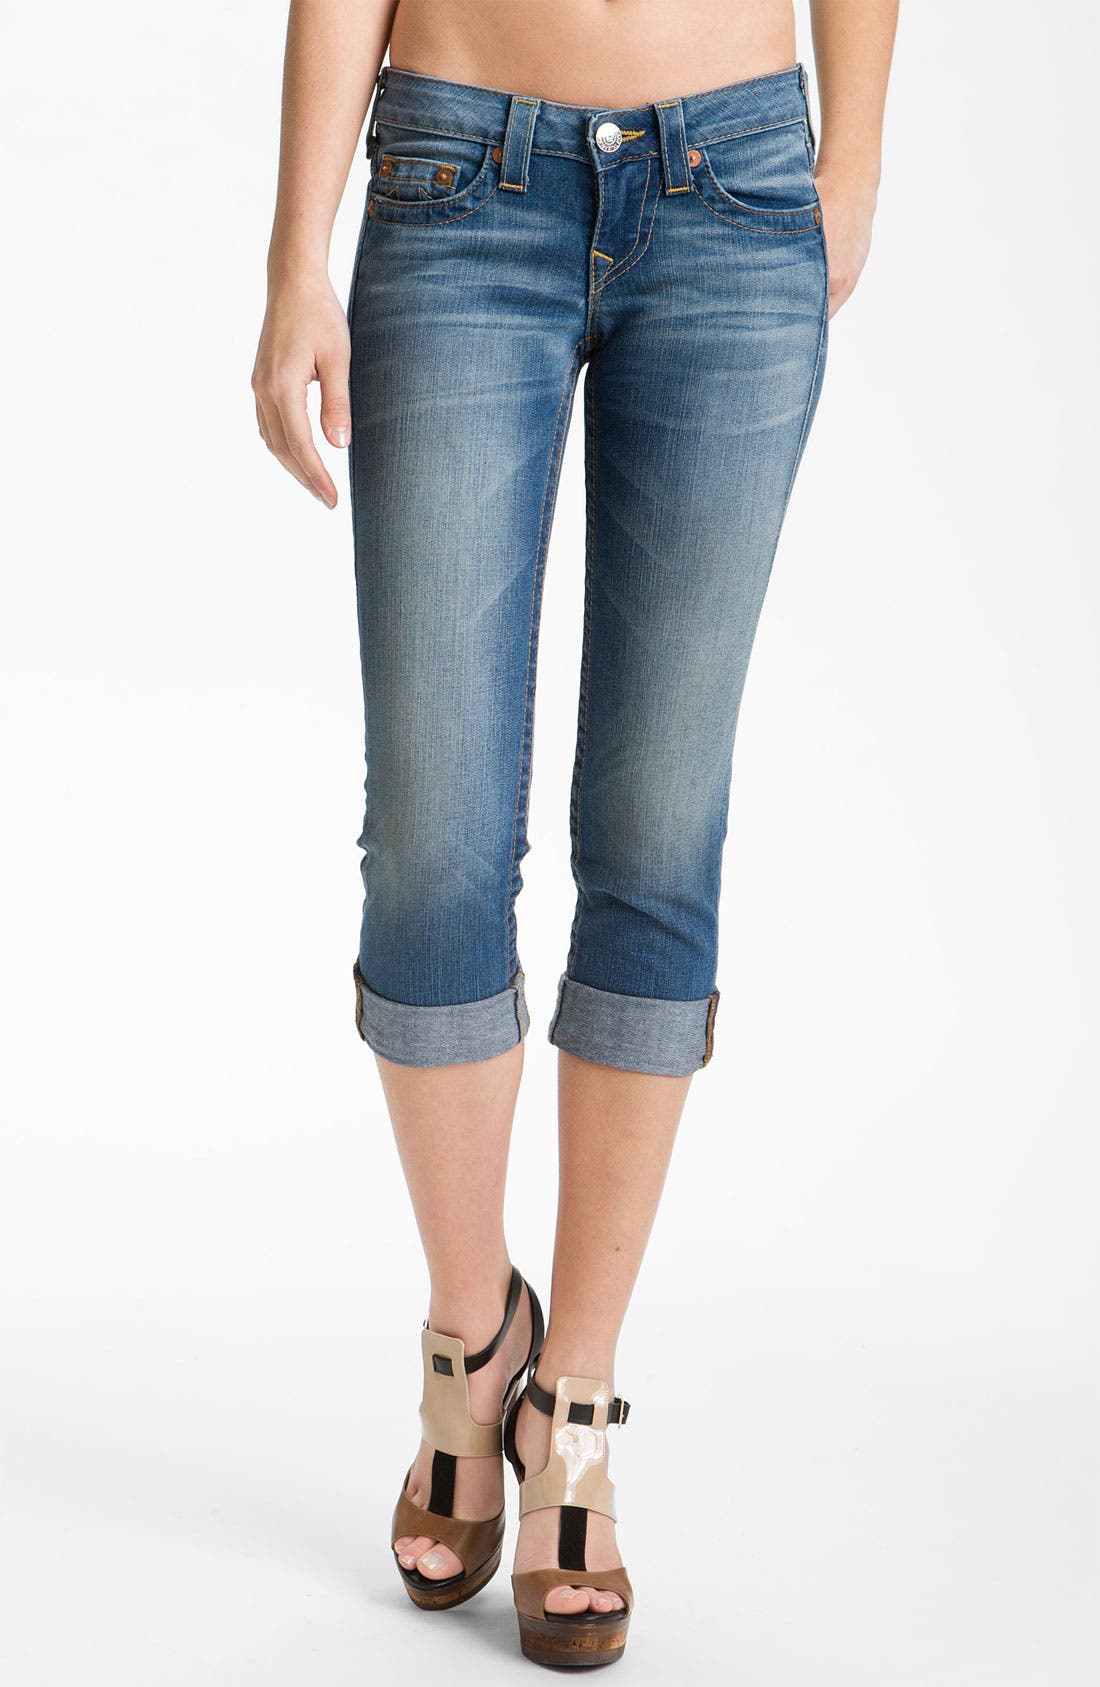 True Religion Brand Jeans 'Lizzy' Crop 